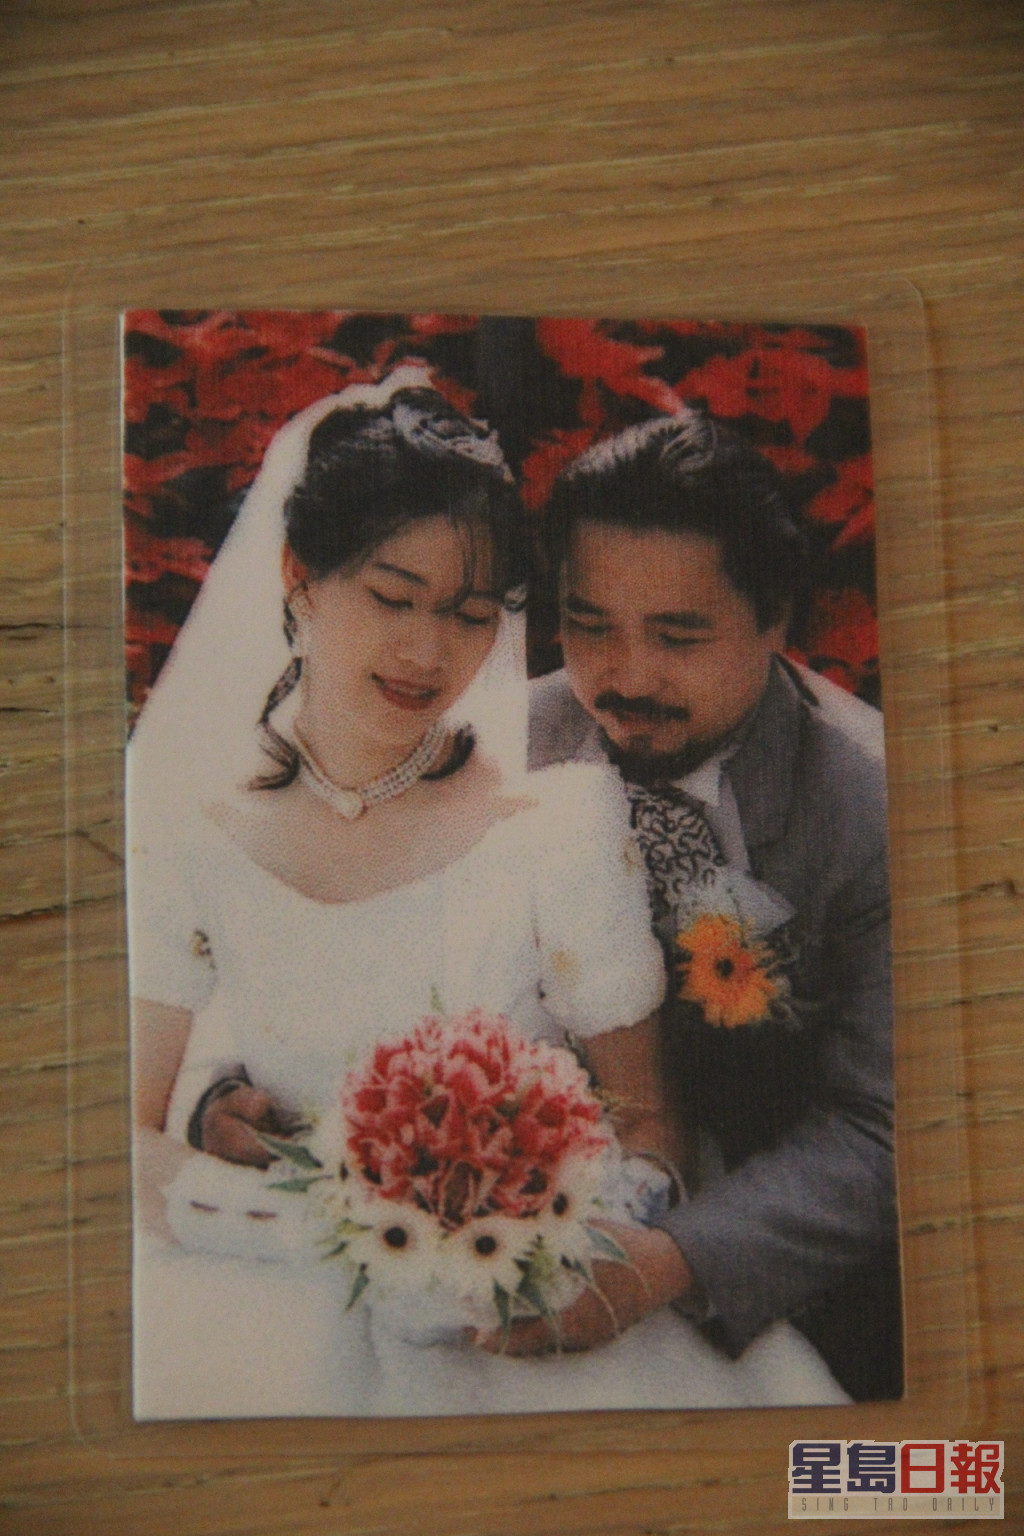 古明华于1996年结婚。